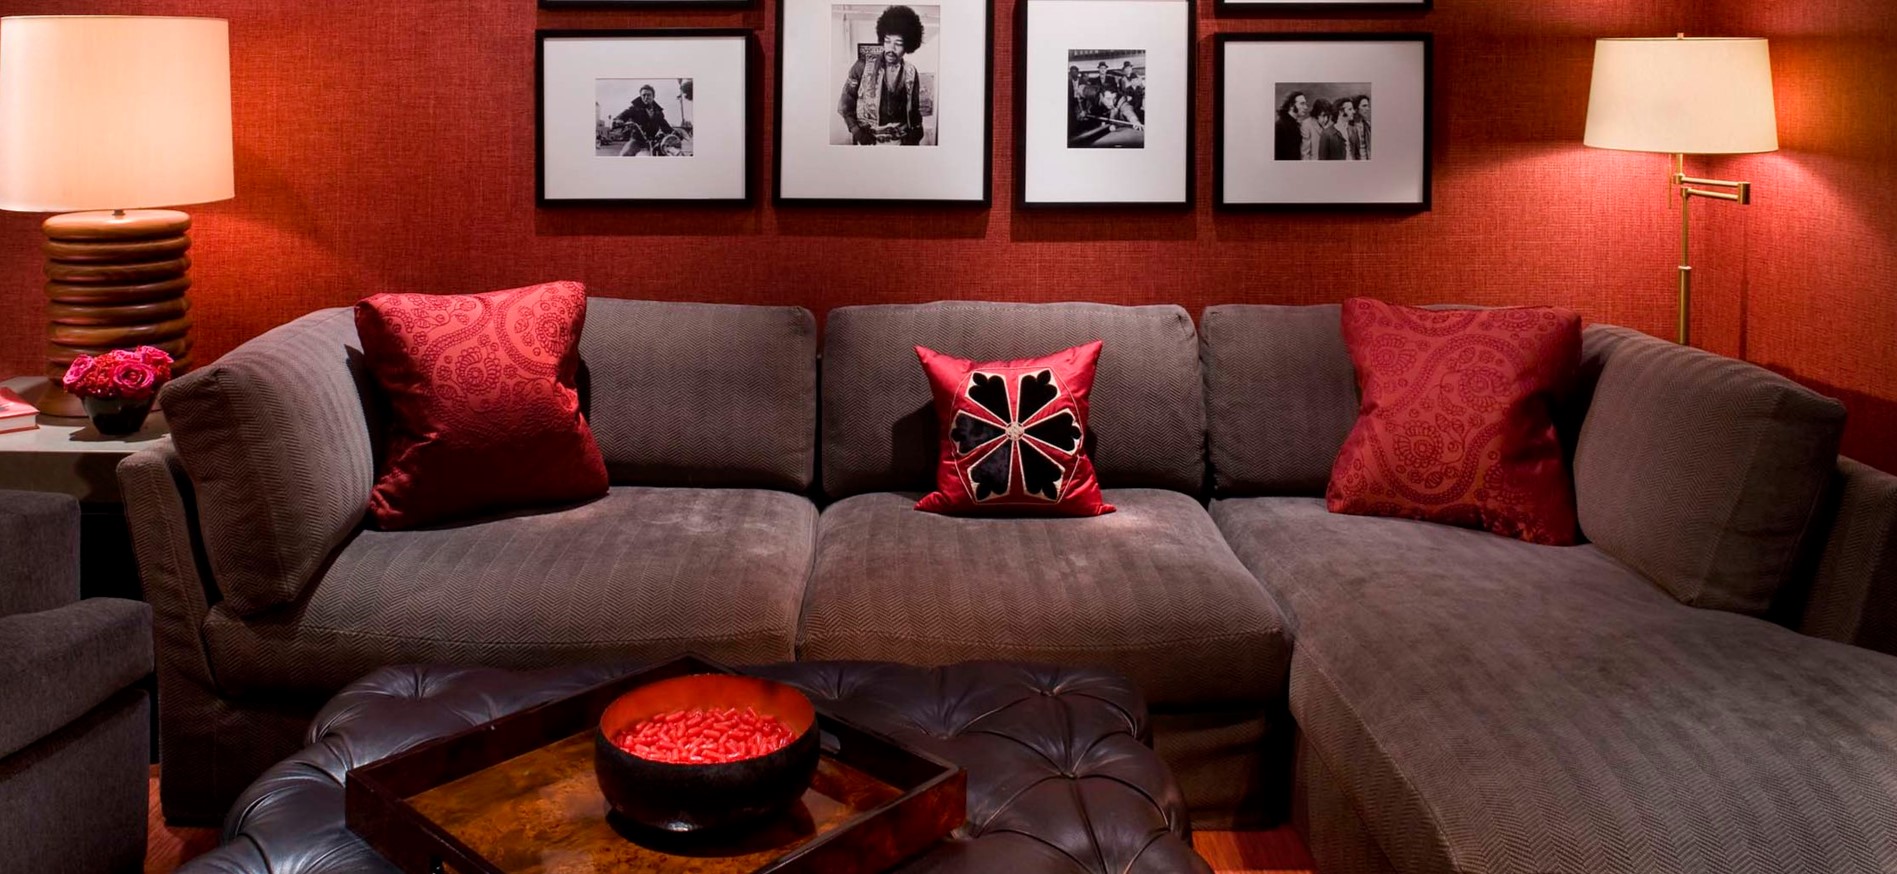 Красные подушки под цвет стен идеально гармонируют с обивкой дивана